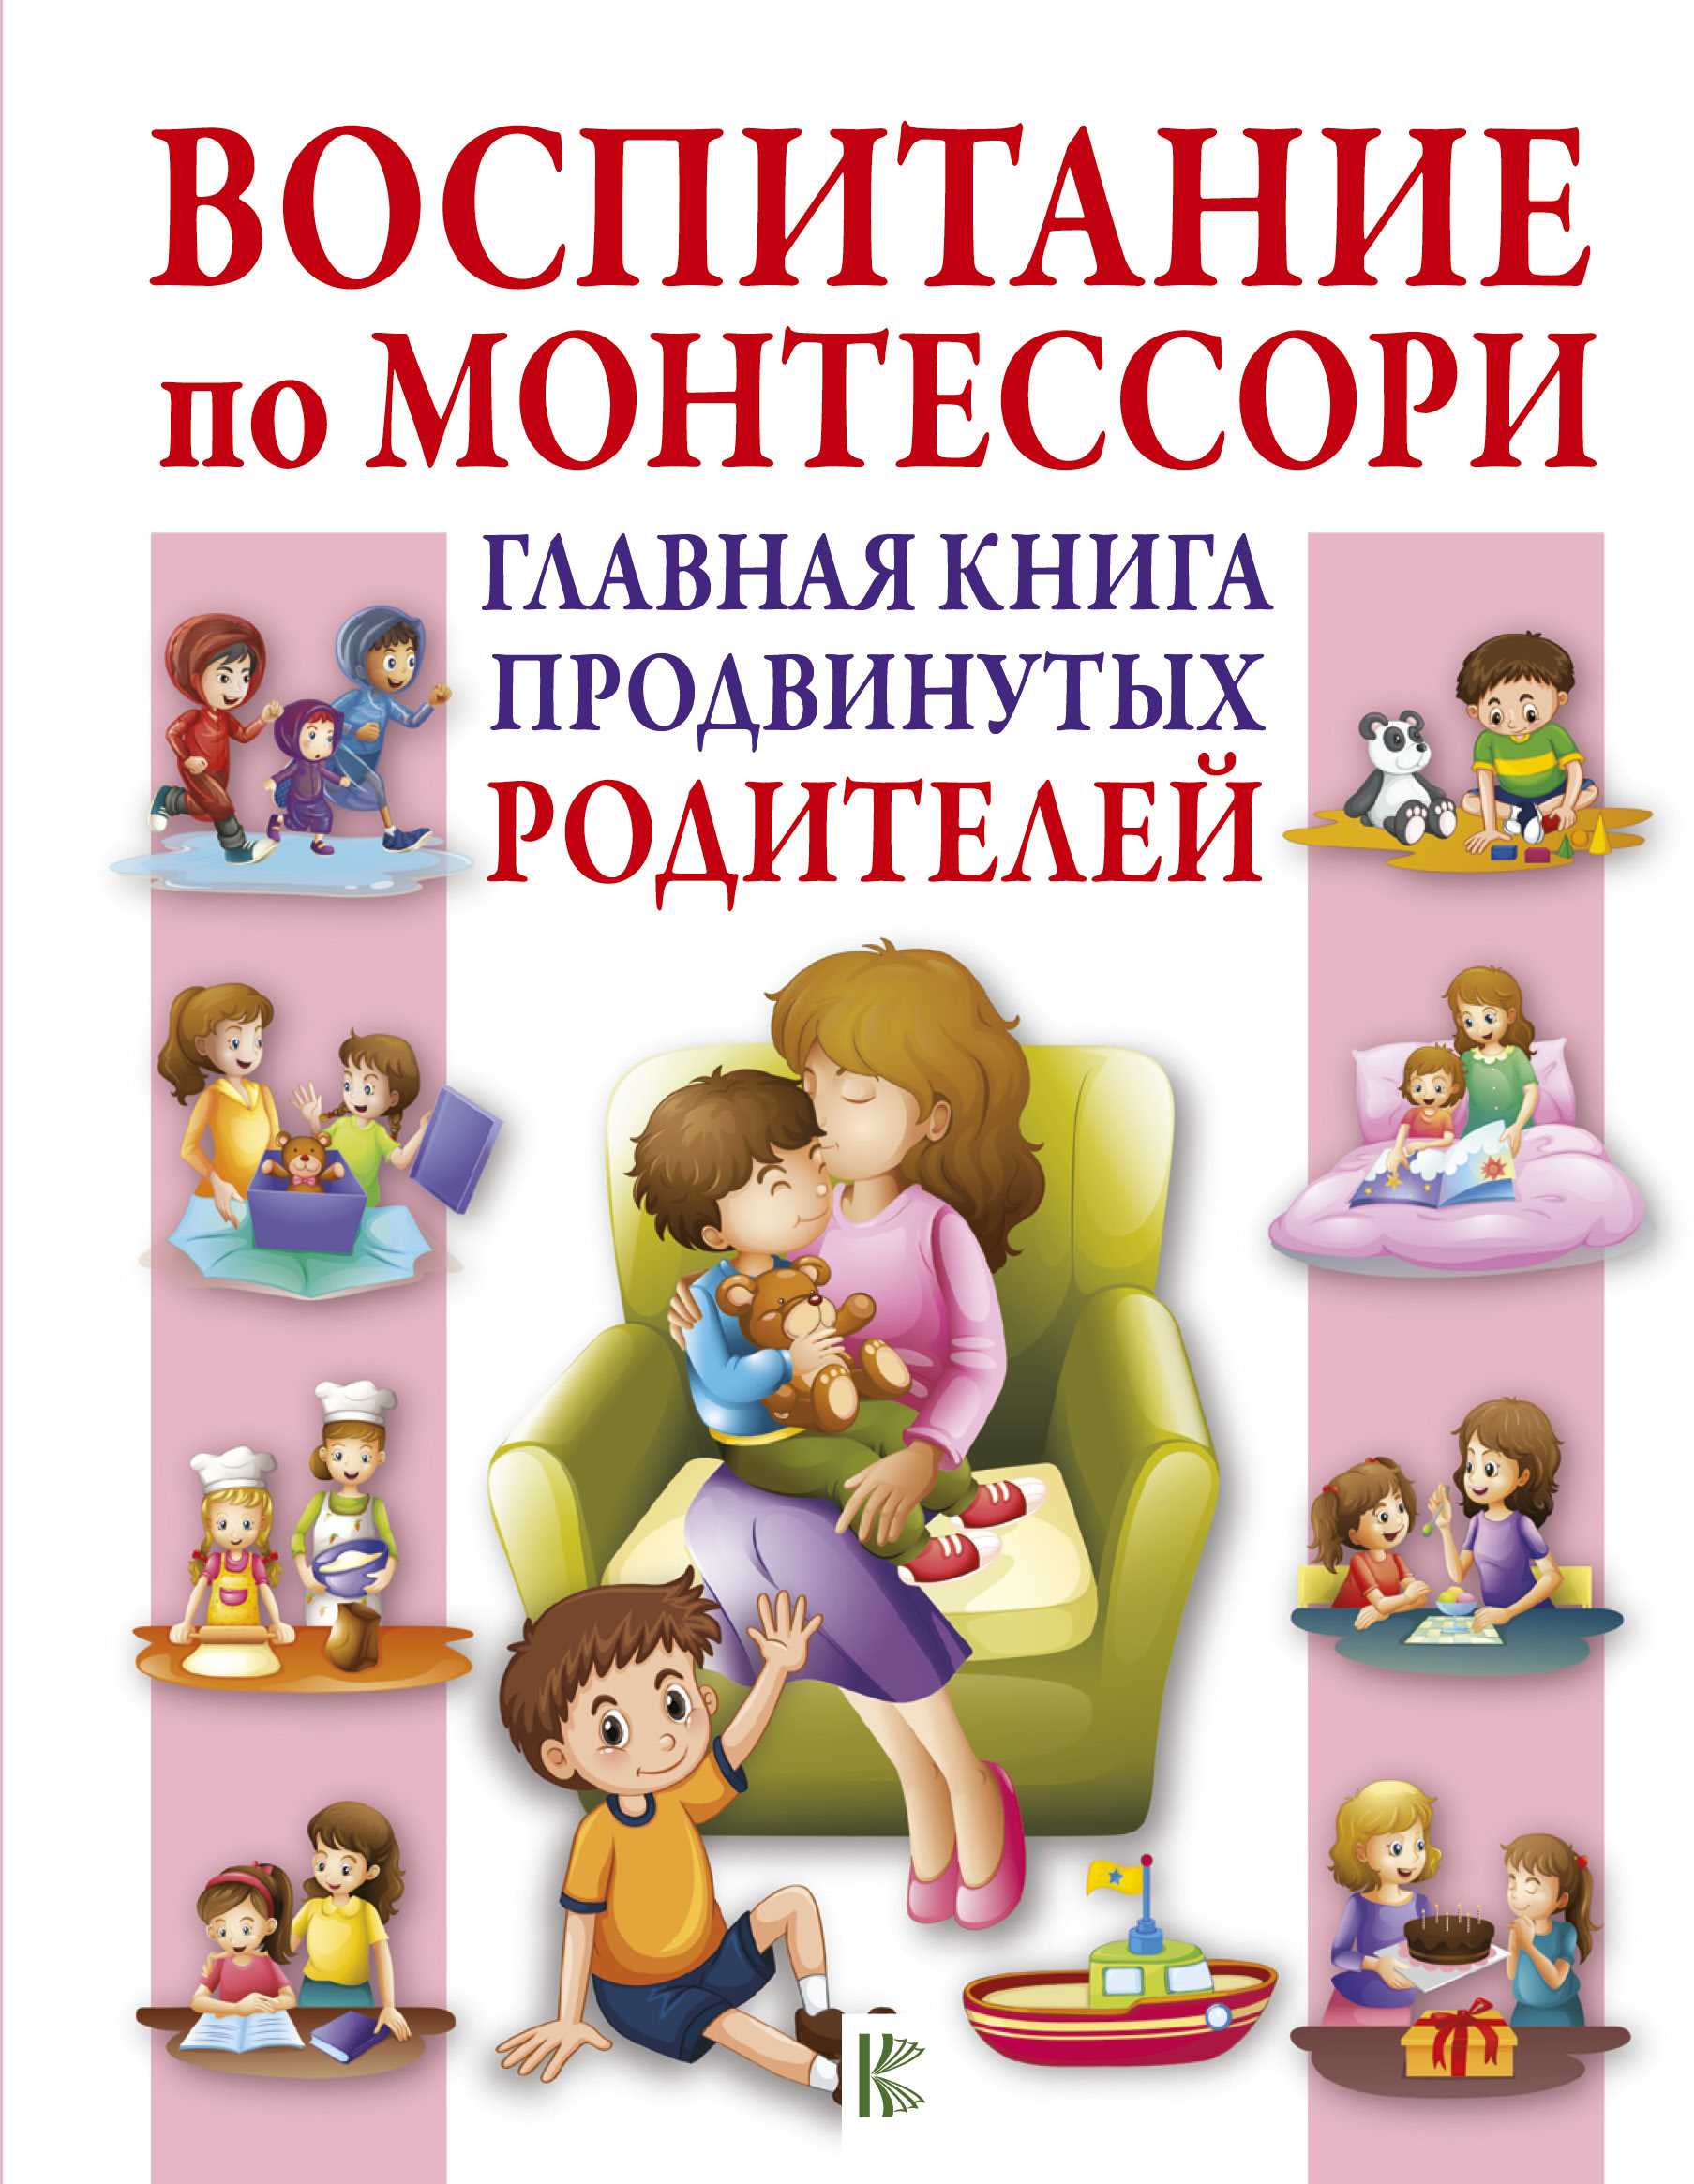 Книги для родителей о воспитании и психологии детей